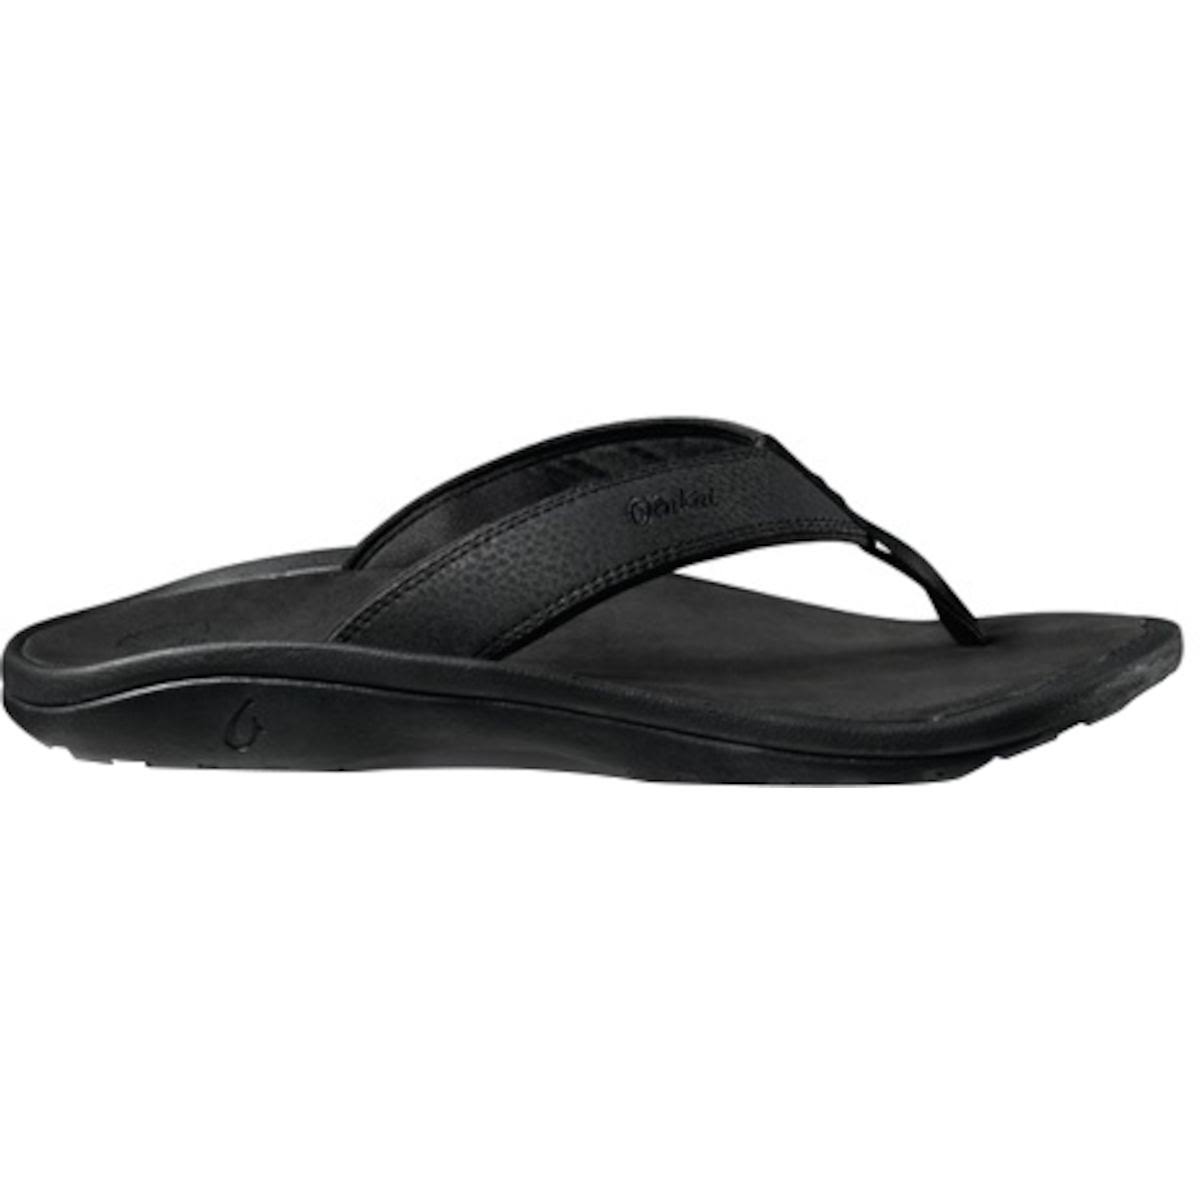 OluKai Men's Sandals Ohana Flip Flops - Black, 11 USM